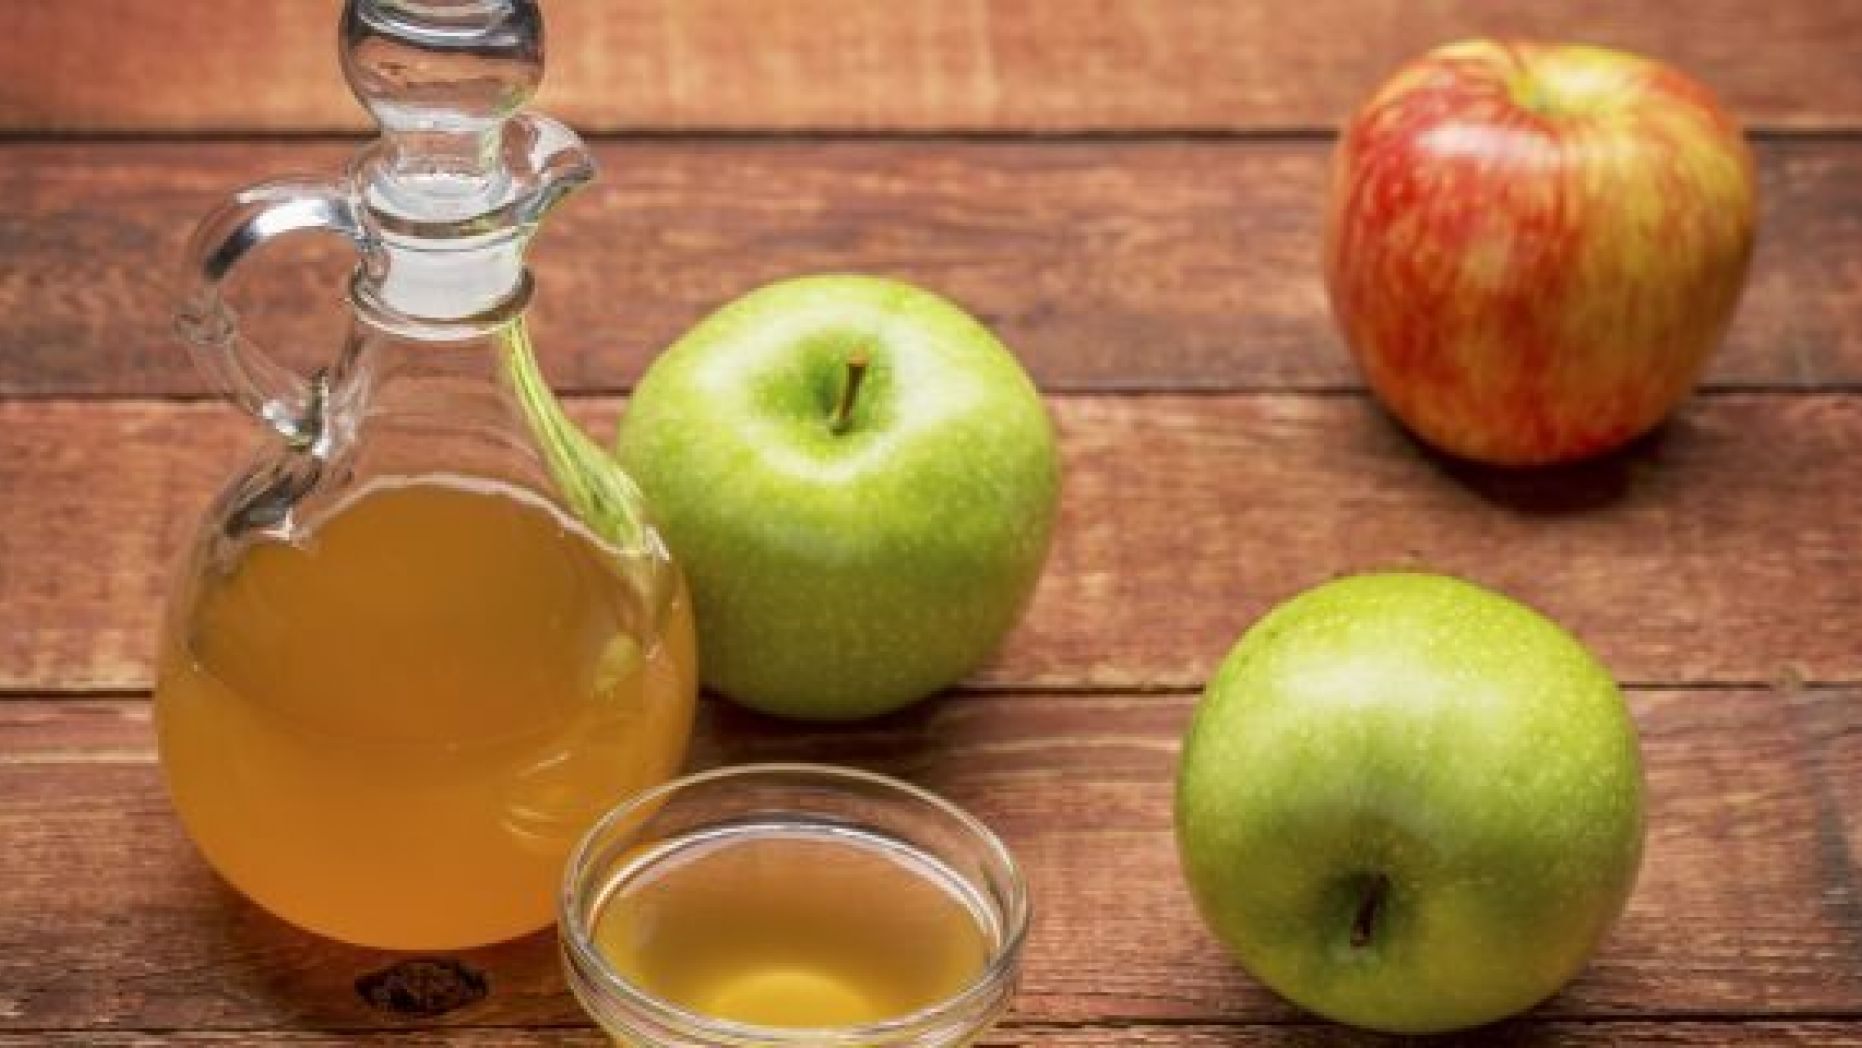 Le vinaigre de cidre de pomme peut-il aider à perdre du poids